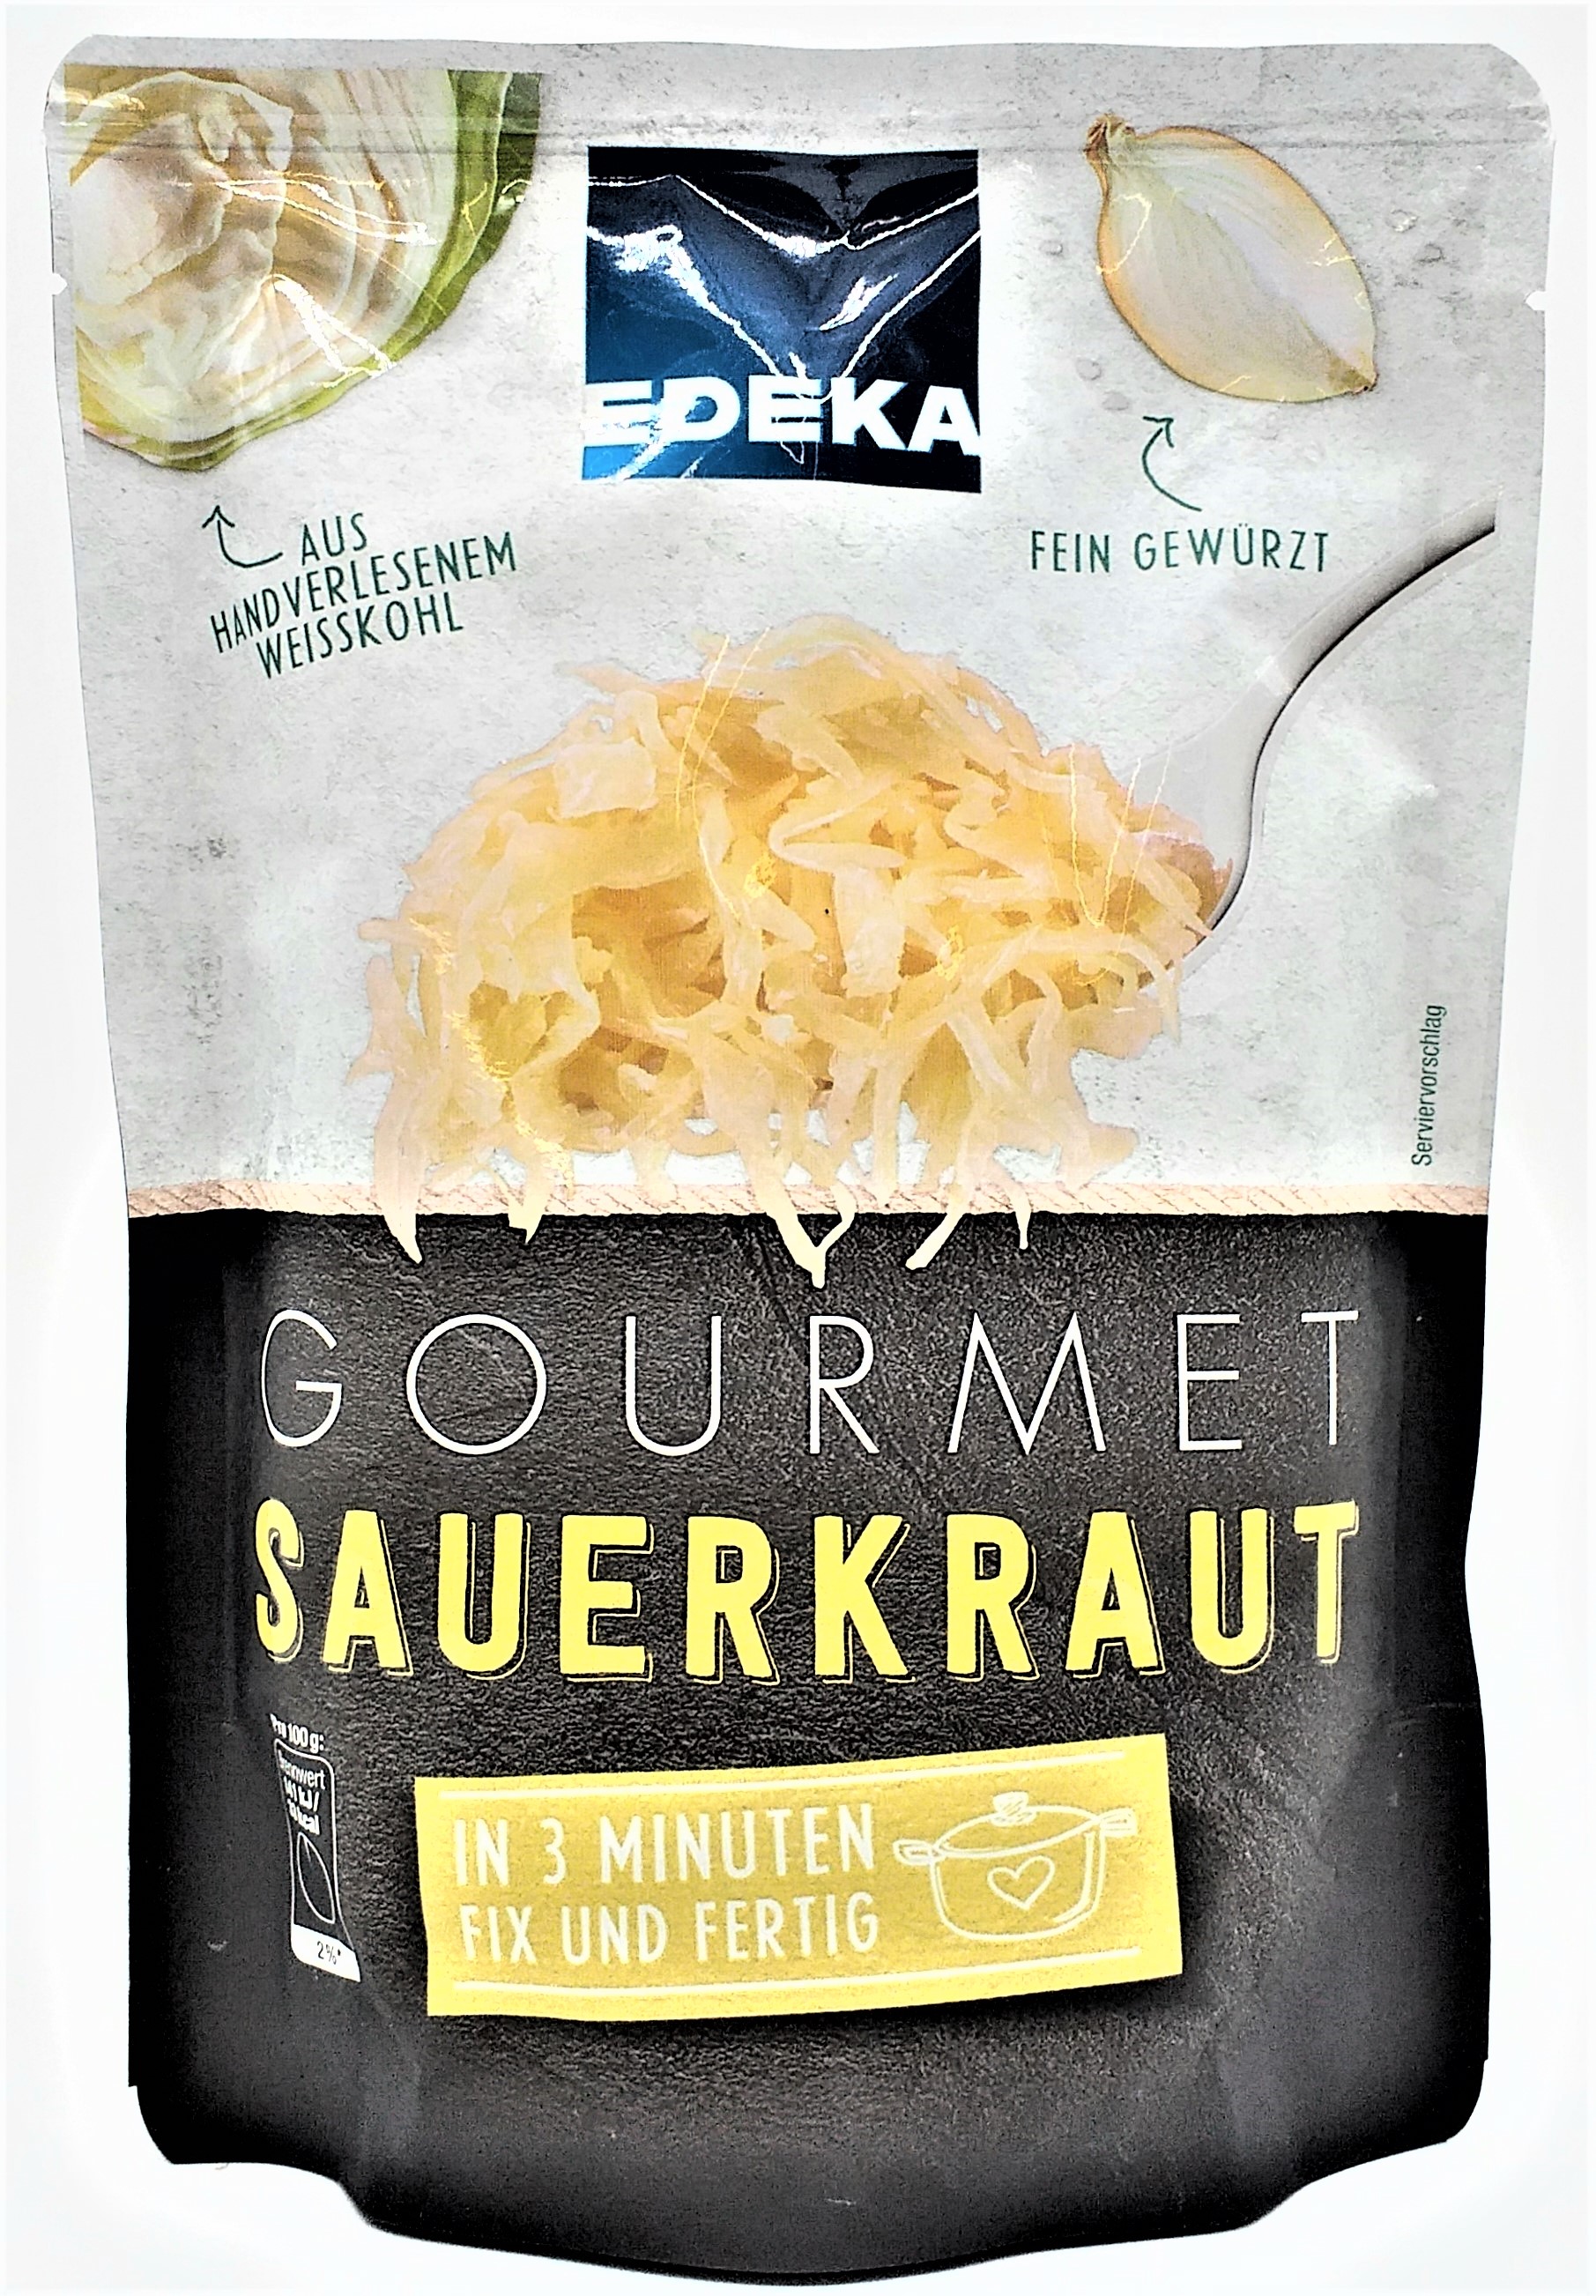 EDEKA Gourmet Sauerkraut 375g